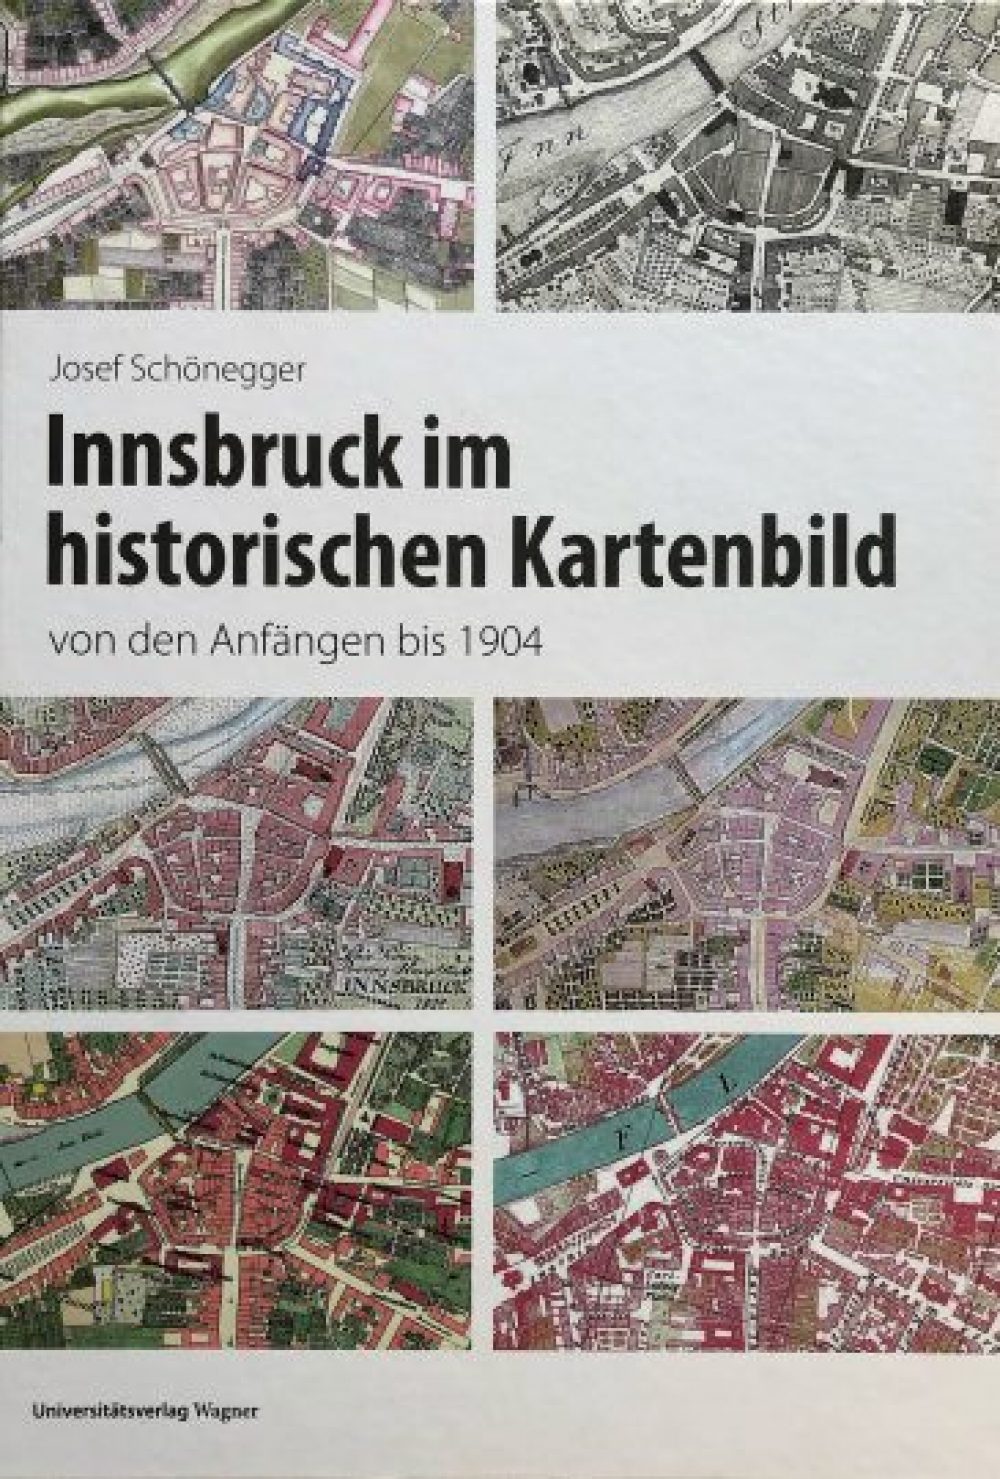 Josef Schönegger, Innsbruck im historischen Kartenbild